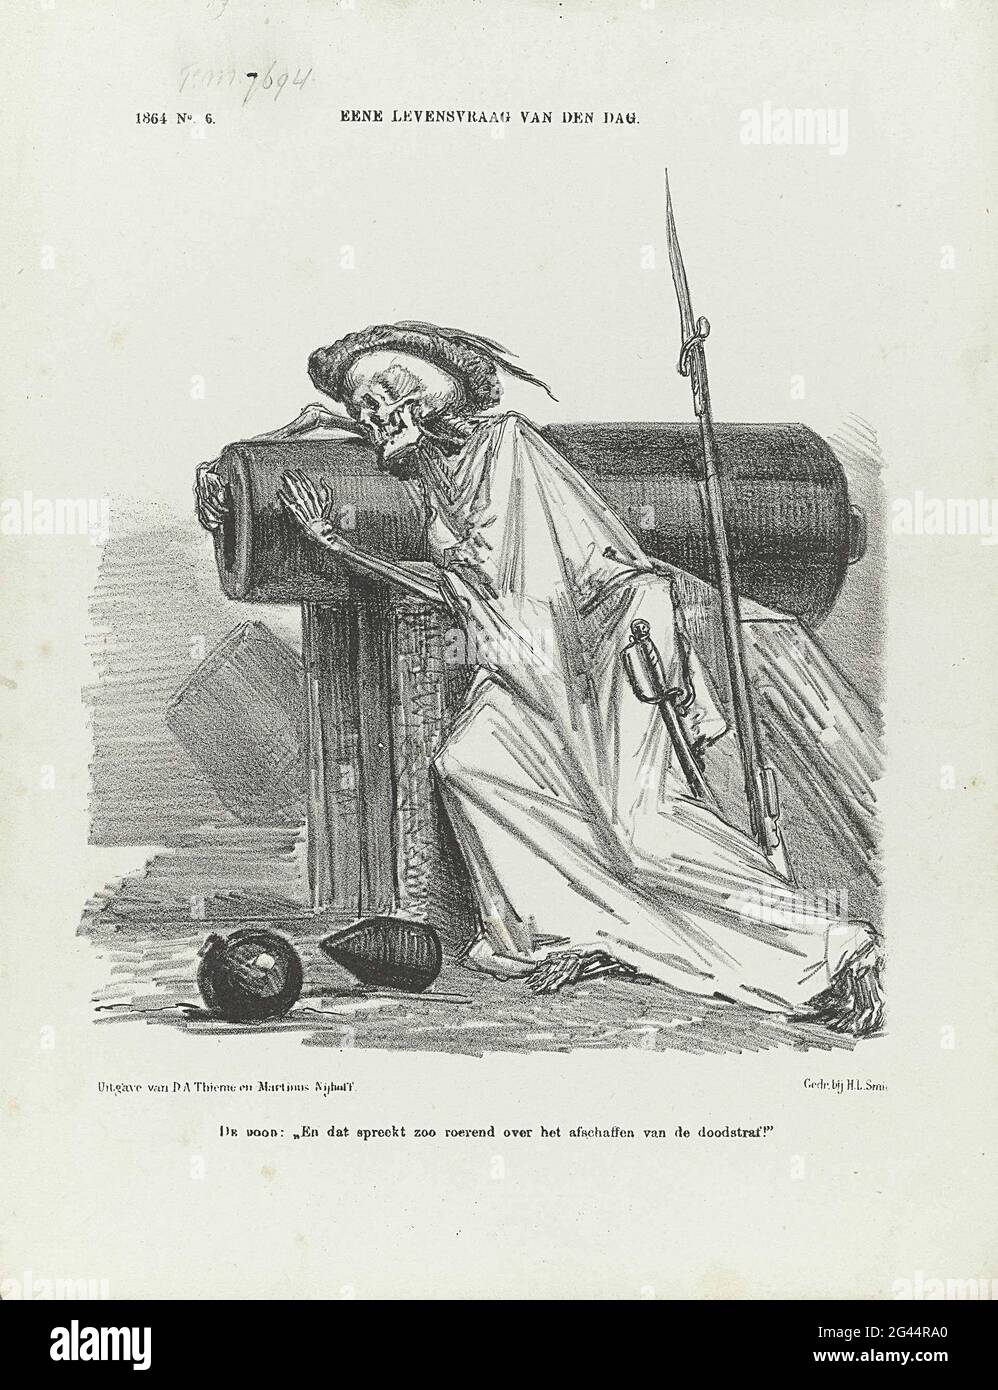 Caricatura sobre la abolición de la pena de muerte, 1864; una cuestión de vida del día. Dibujos animados sobre la ironía de la abolición de la pena de muerte en tiempos de